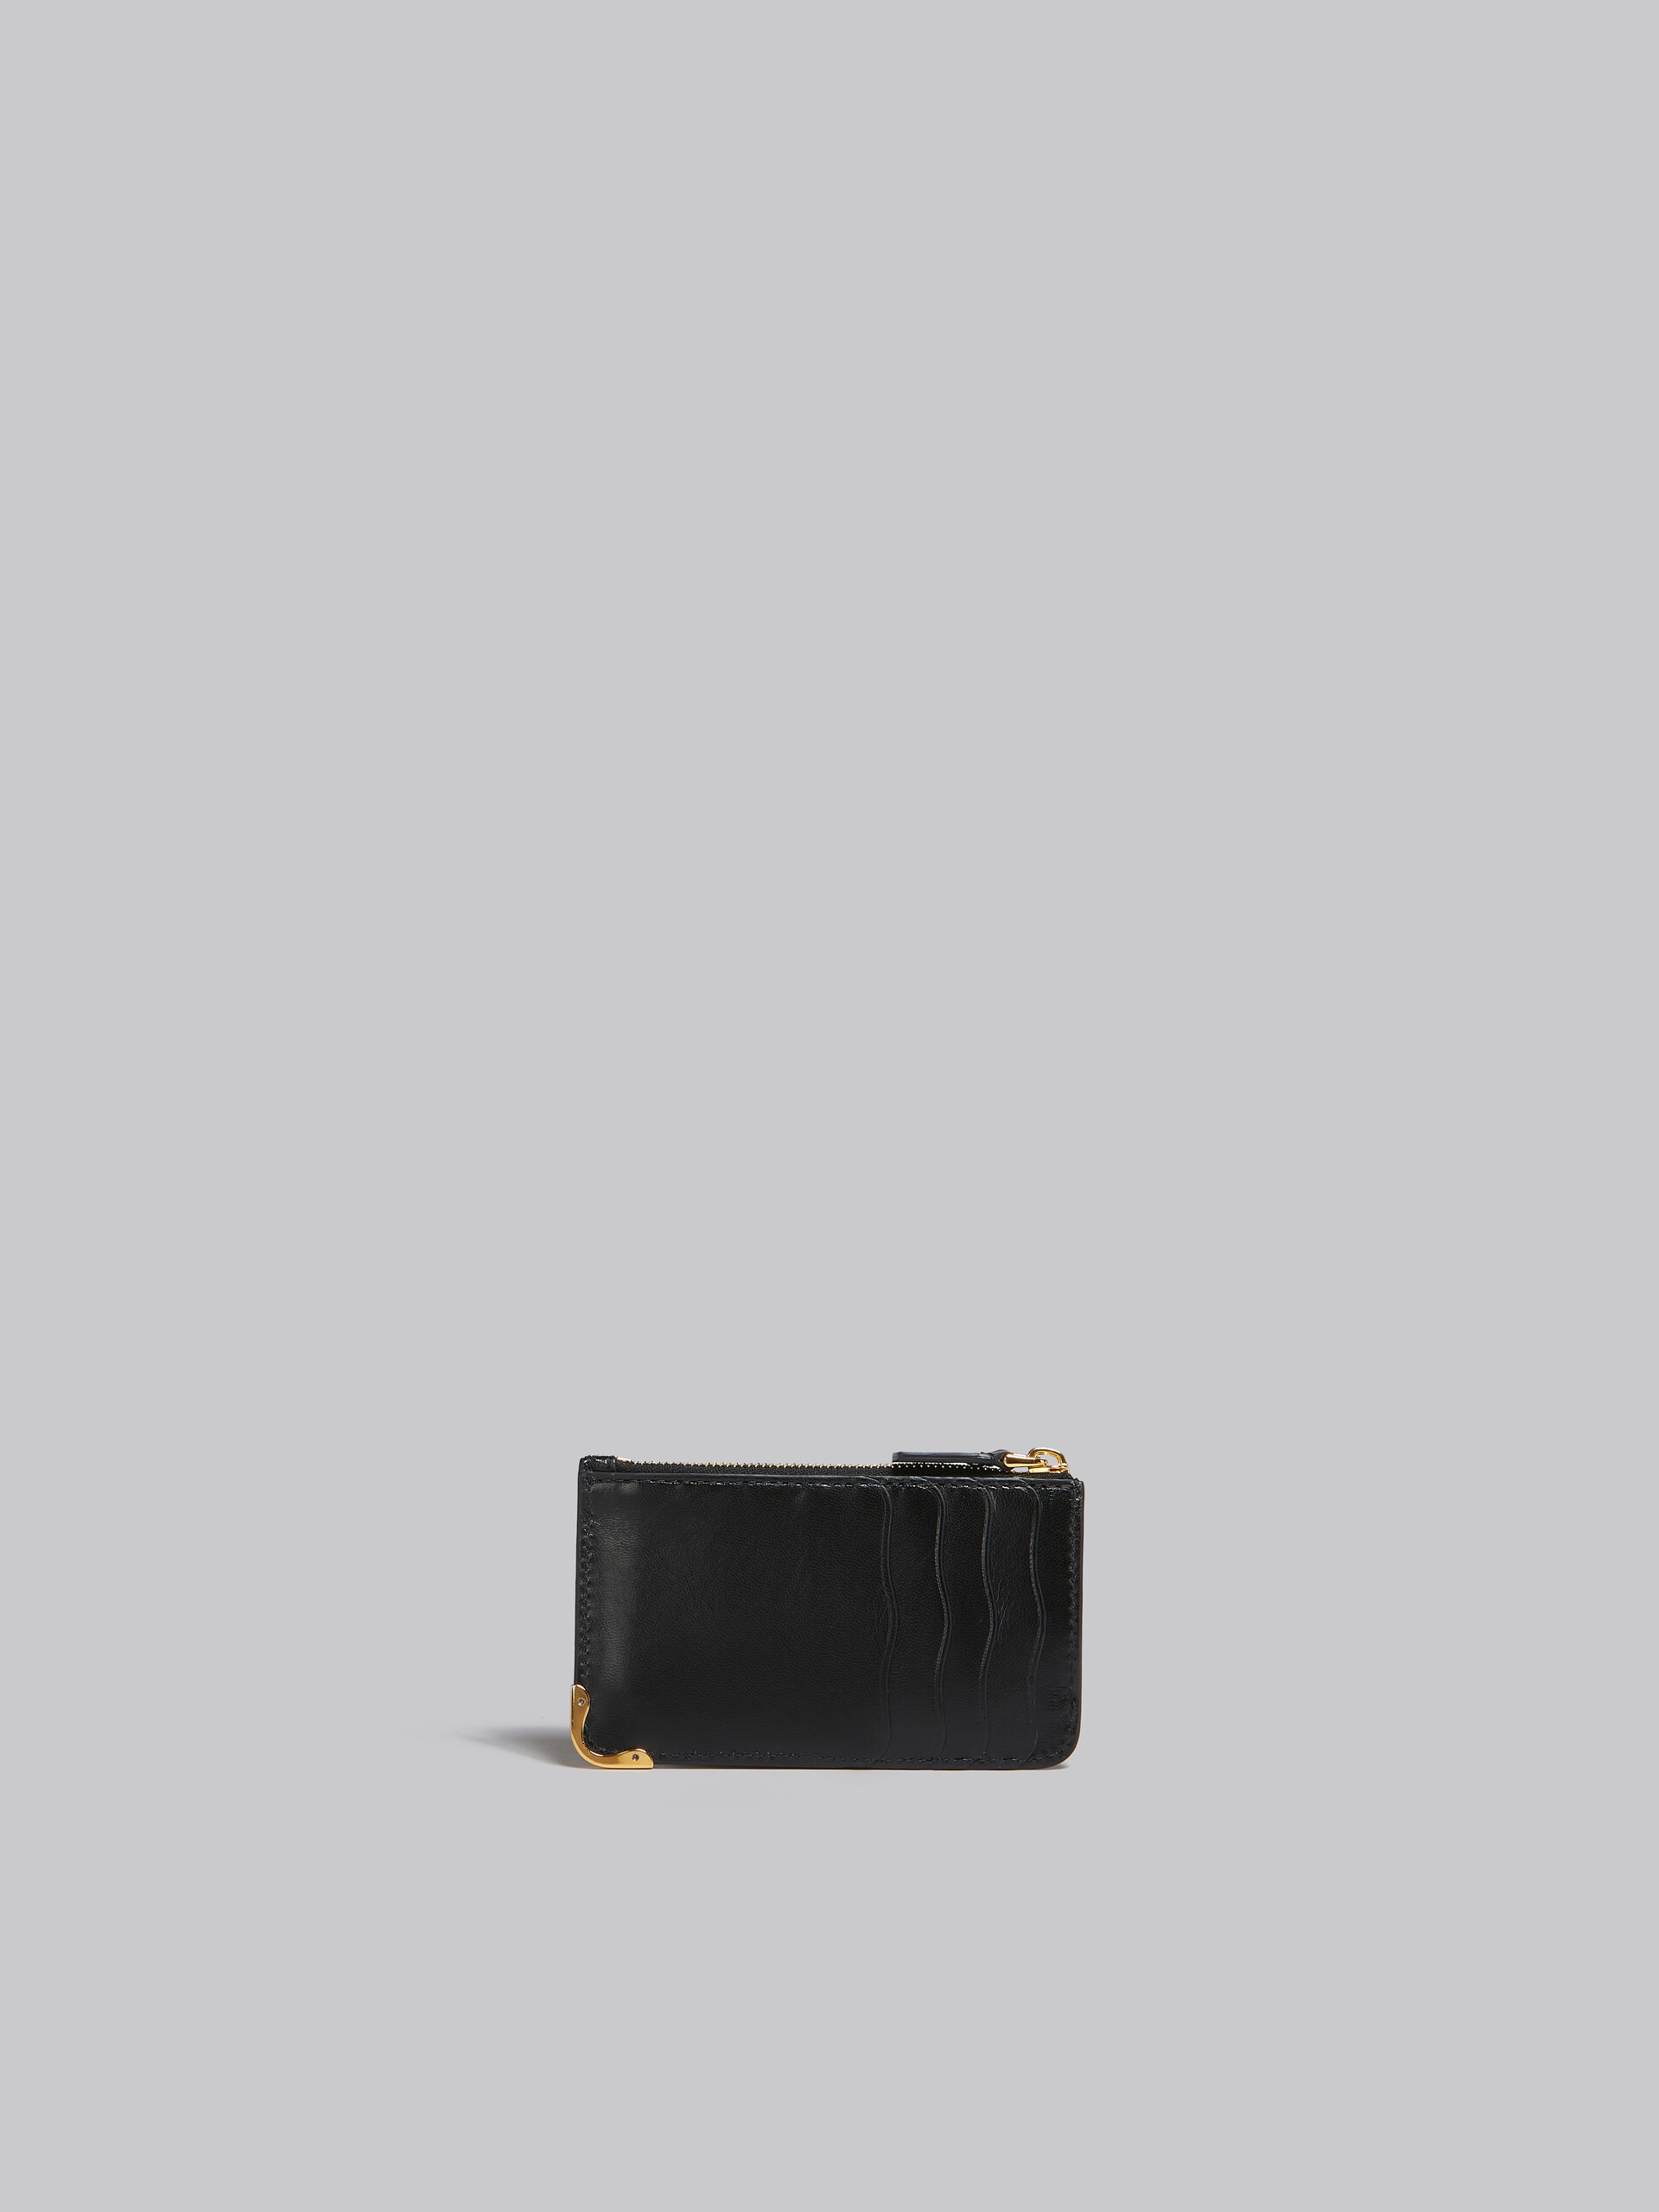 Portamonete in pelle nera con tasche ondulate - Portafogli - Image 3